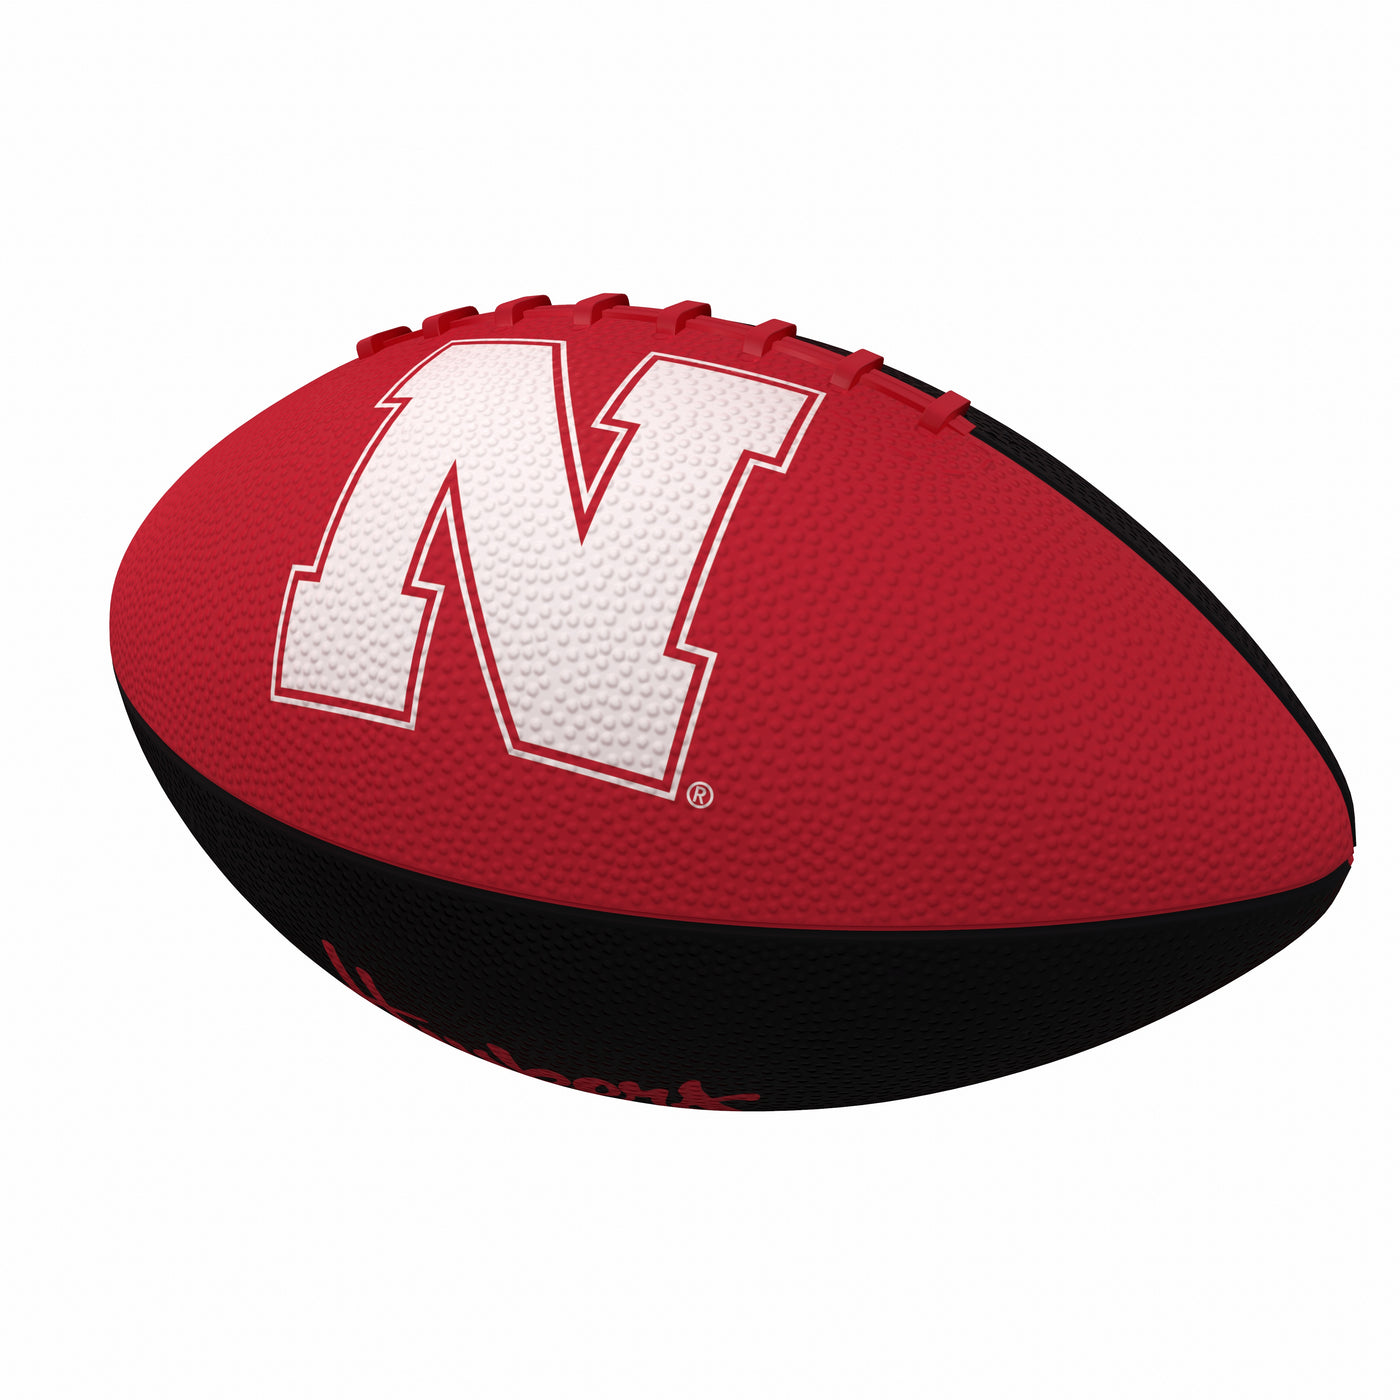 Nebraska Pinwheel Logo Junior Size Rubber Football